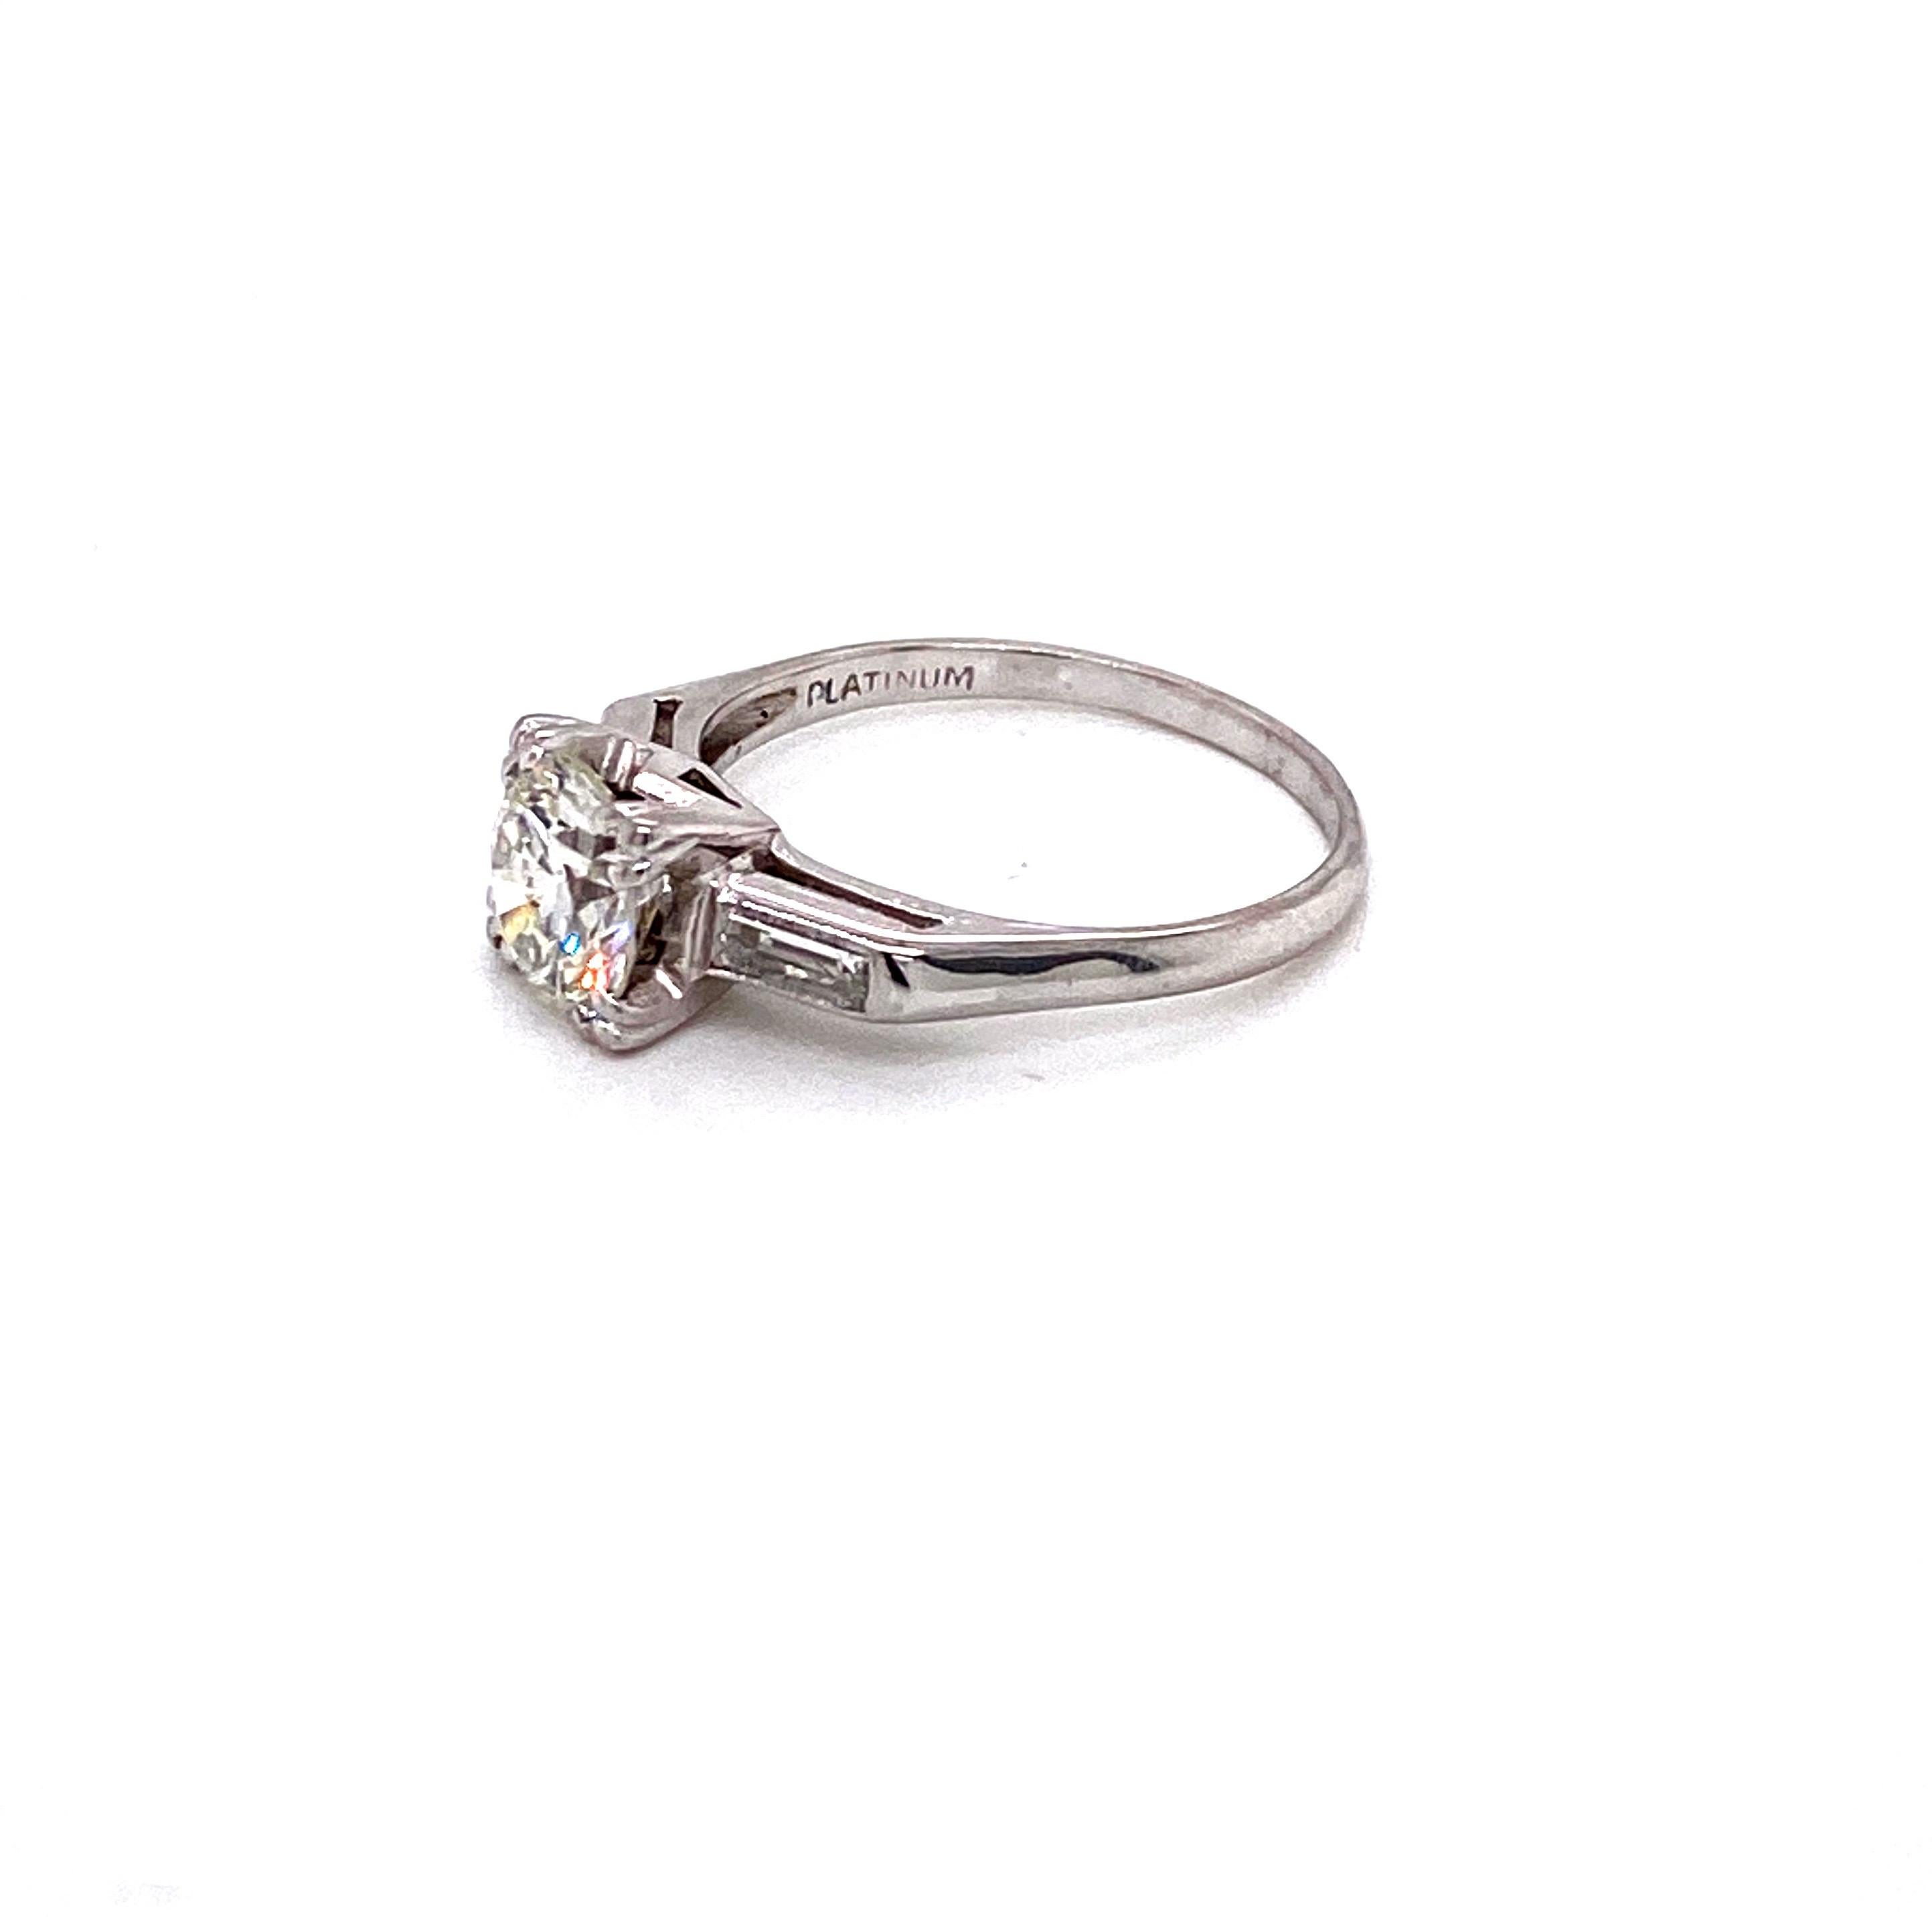 Dieser Vintage-Ring aus Platin ist ein atemberaubendes Beispiel für die Eleganz der Mitte des 20. Jahrhunderts und stammt aus den legendären 1950er Jahren. Das Herzstück ist ein wunderschöner runder Diamant im Übergangsschliff mit einem Gewicht von